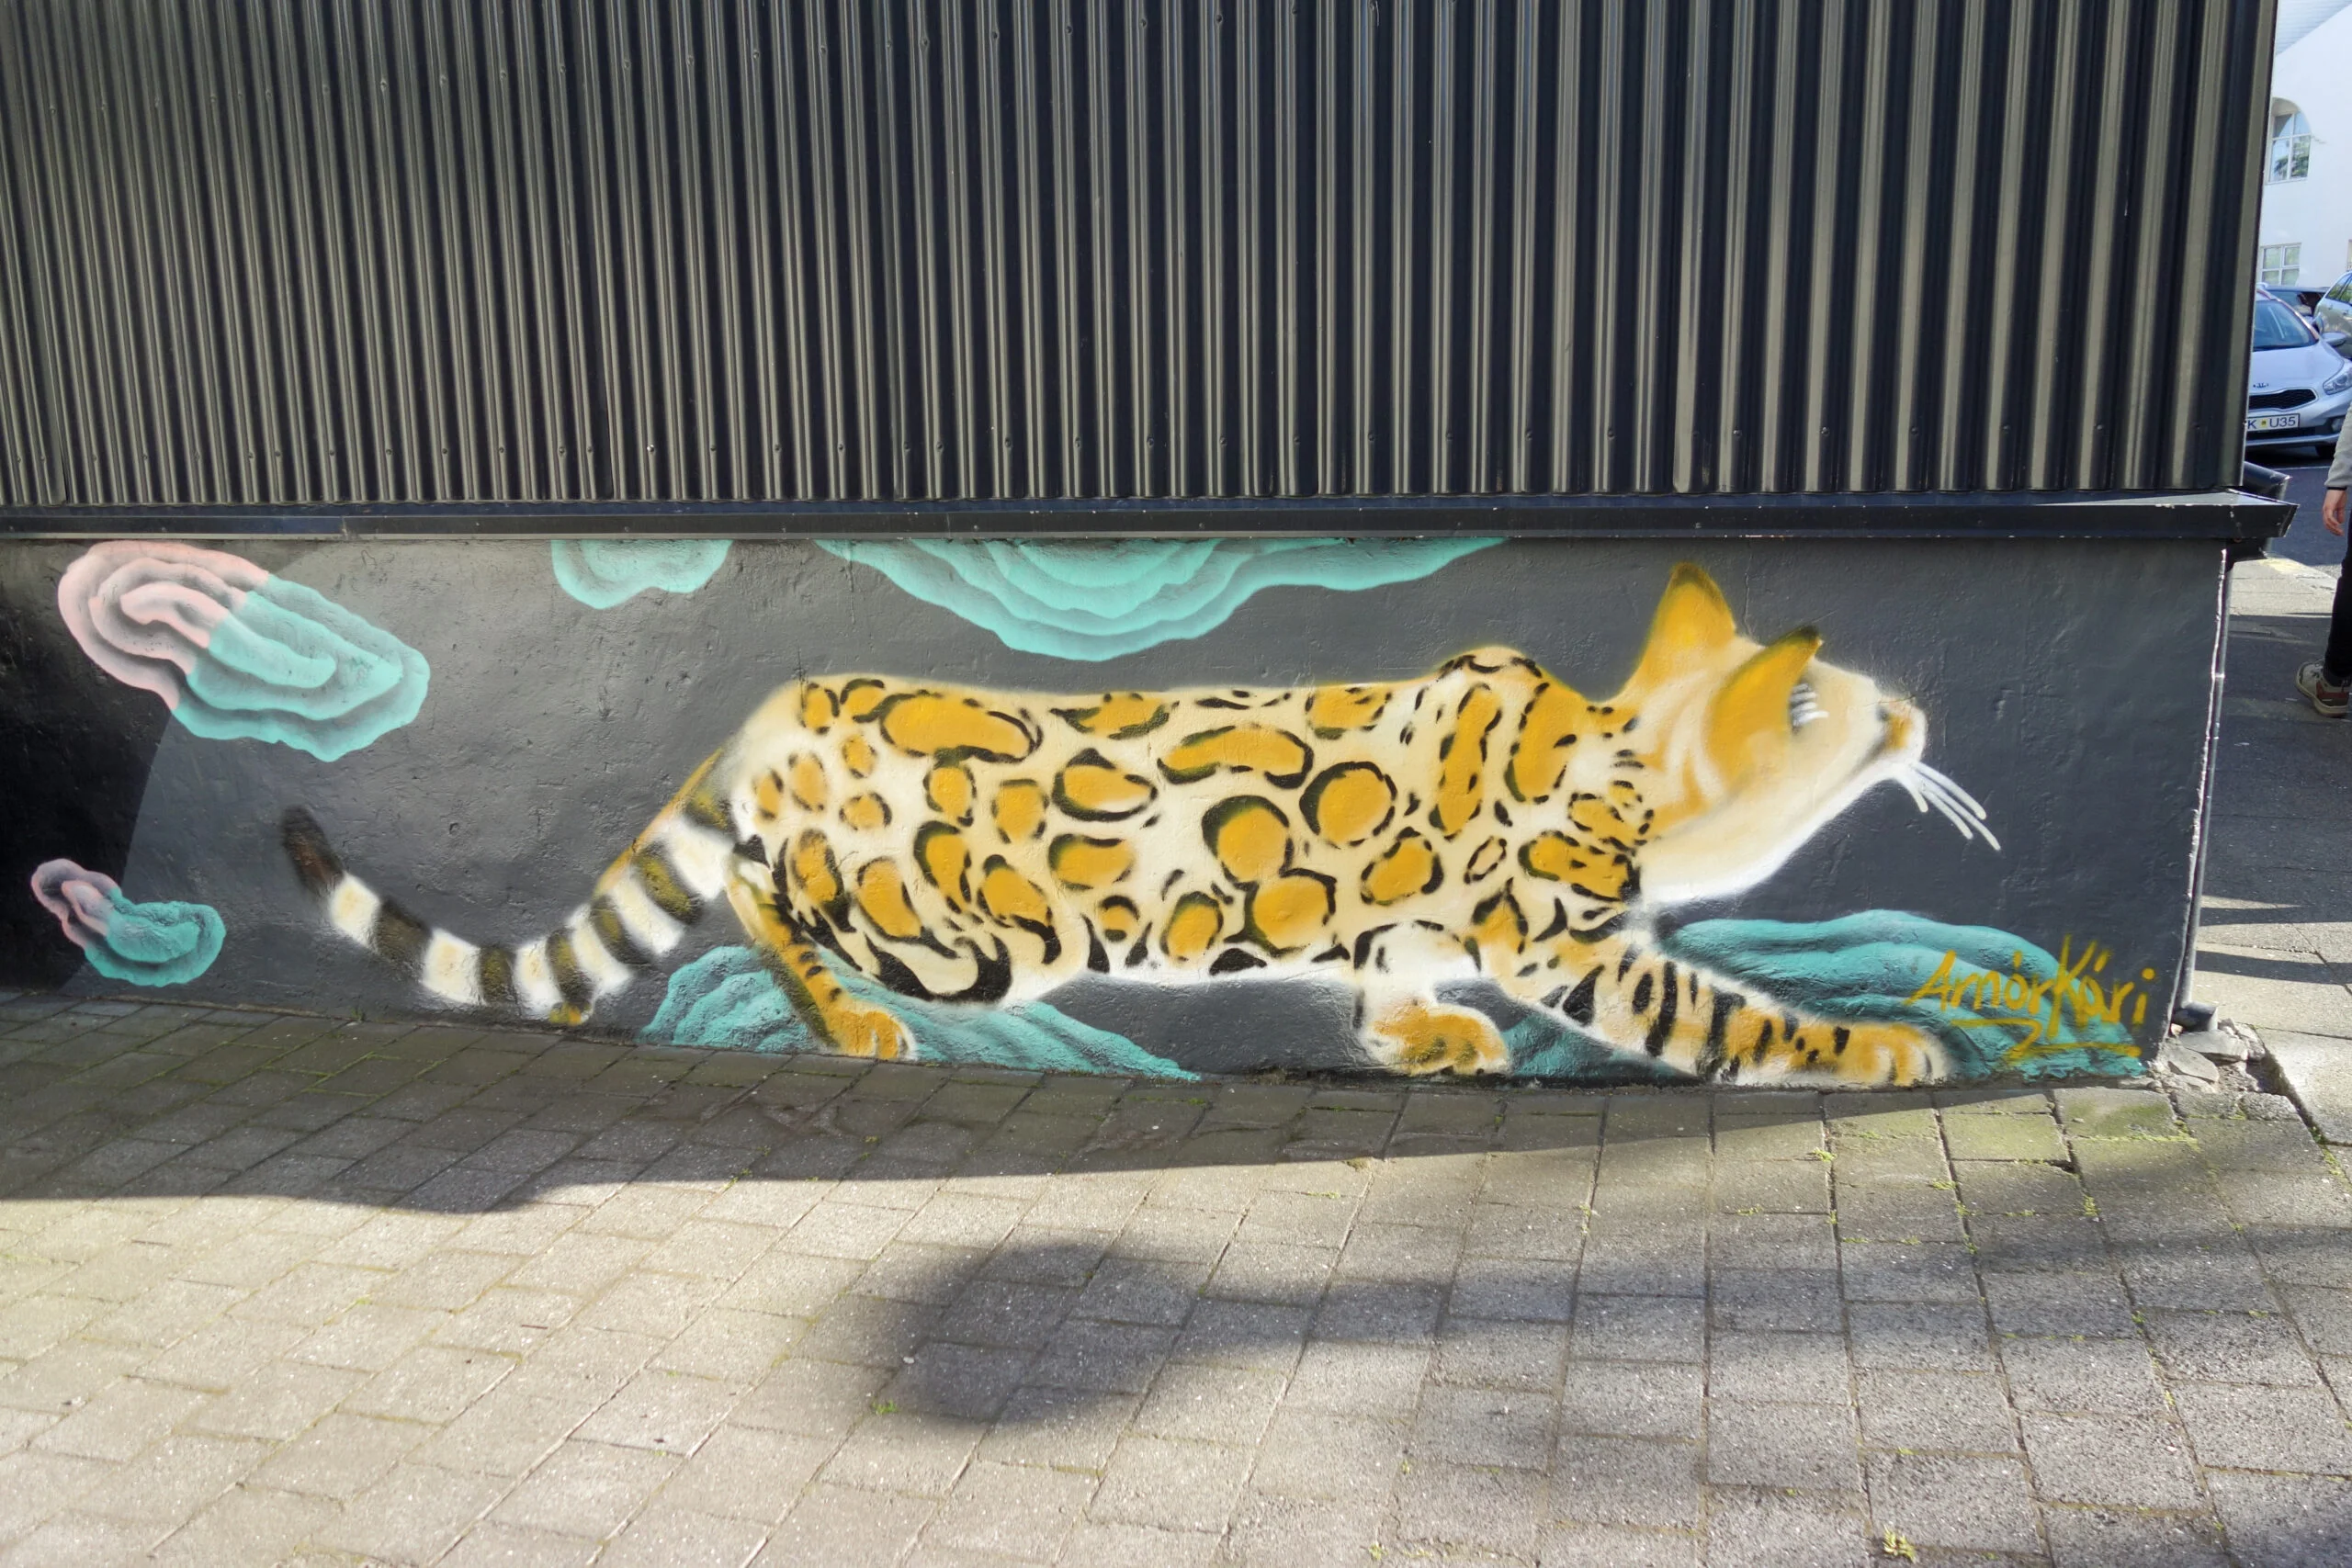 rues emblématique en Islande à Reykjavik en juin 2020 avec tag de chat ou de léopard